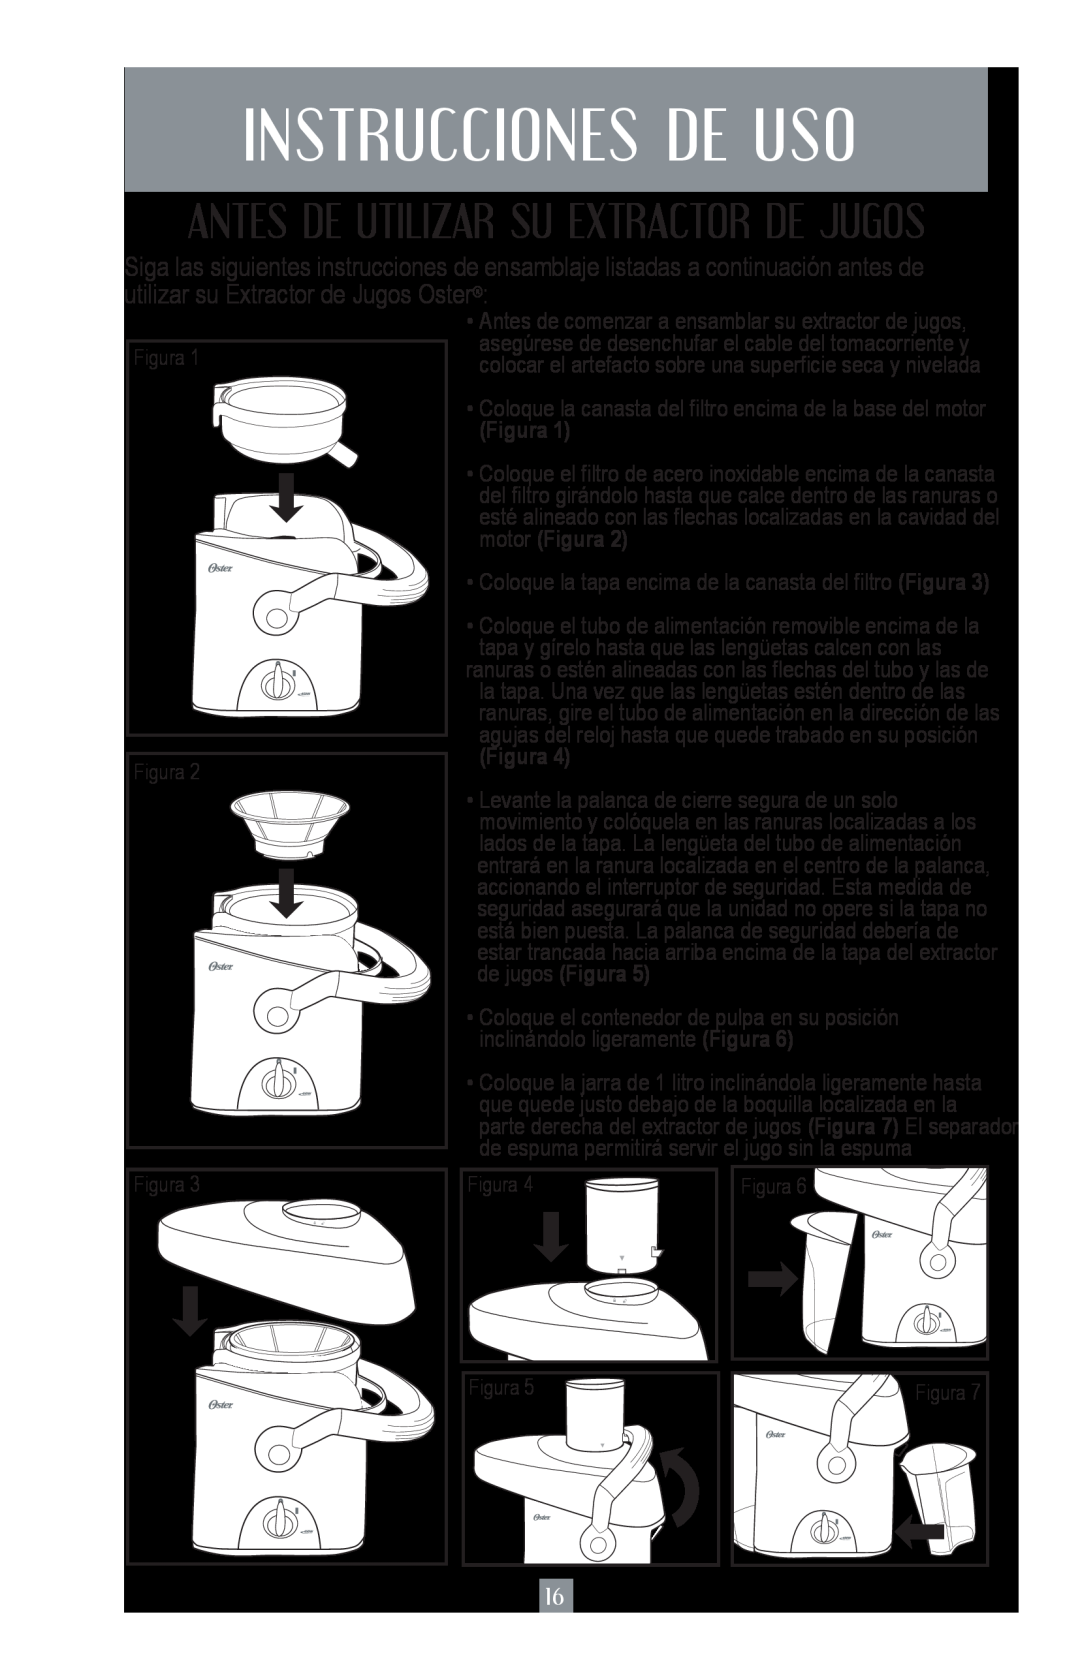 Oster 3167, 3168, JUICE EXTRACTOR user manual Instrucciones De Uso, Antes De Utilizar Su Extractor De Jugos, Figura 